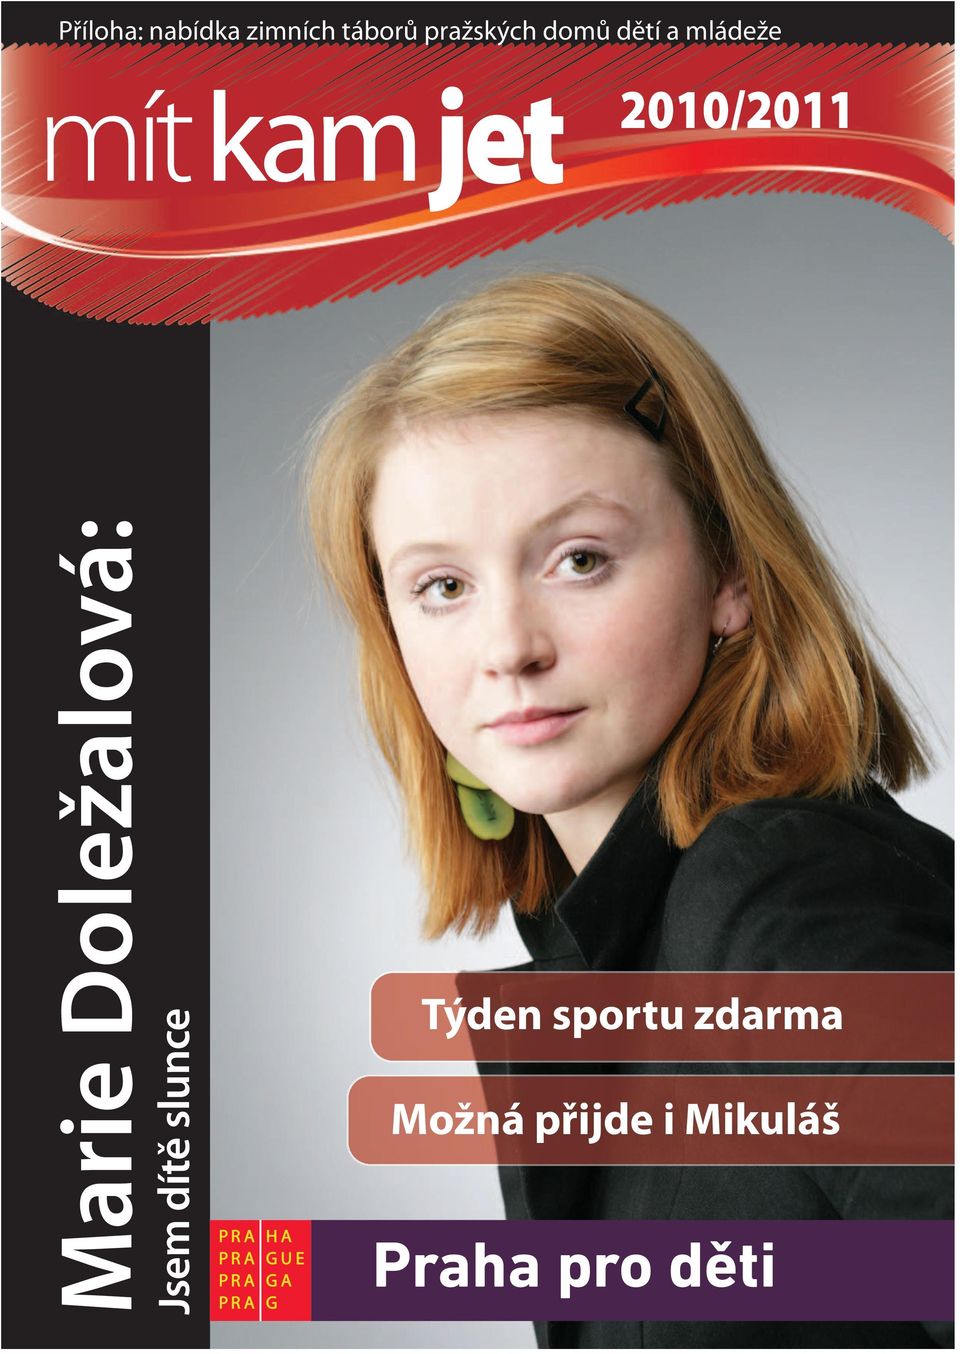 2010/2011 Mrie Doležlová: Jsem